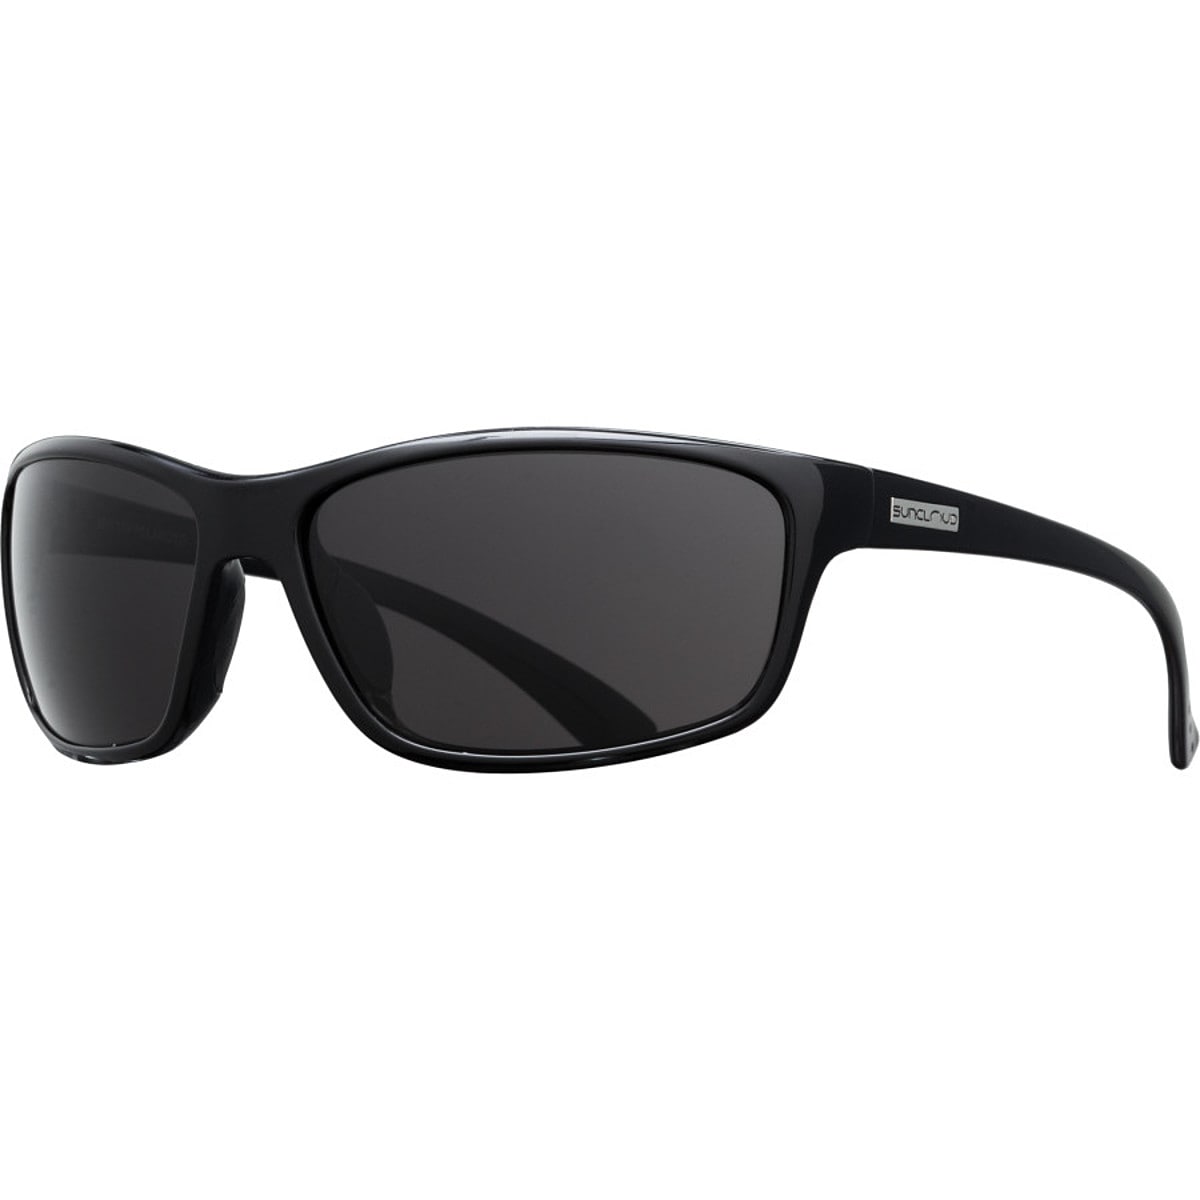 Поляризованные солнцезащитные очки sentry Suncloud Polarized Optics, цвет black/gray очки солнцезащитные stylemark polarized l2480d